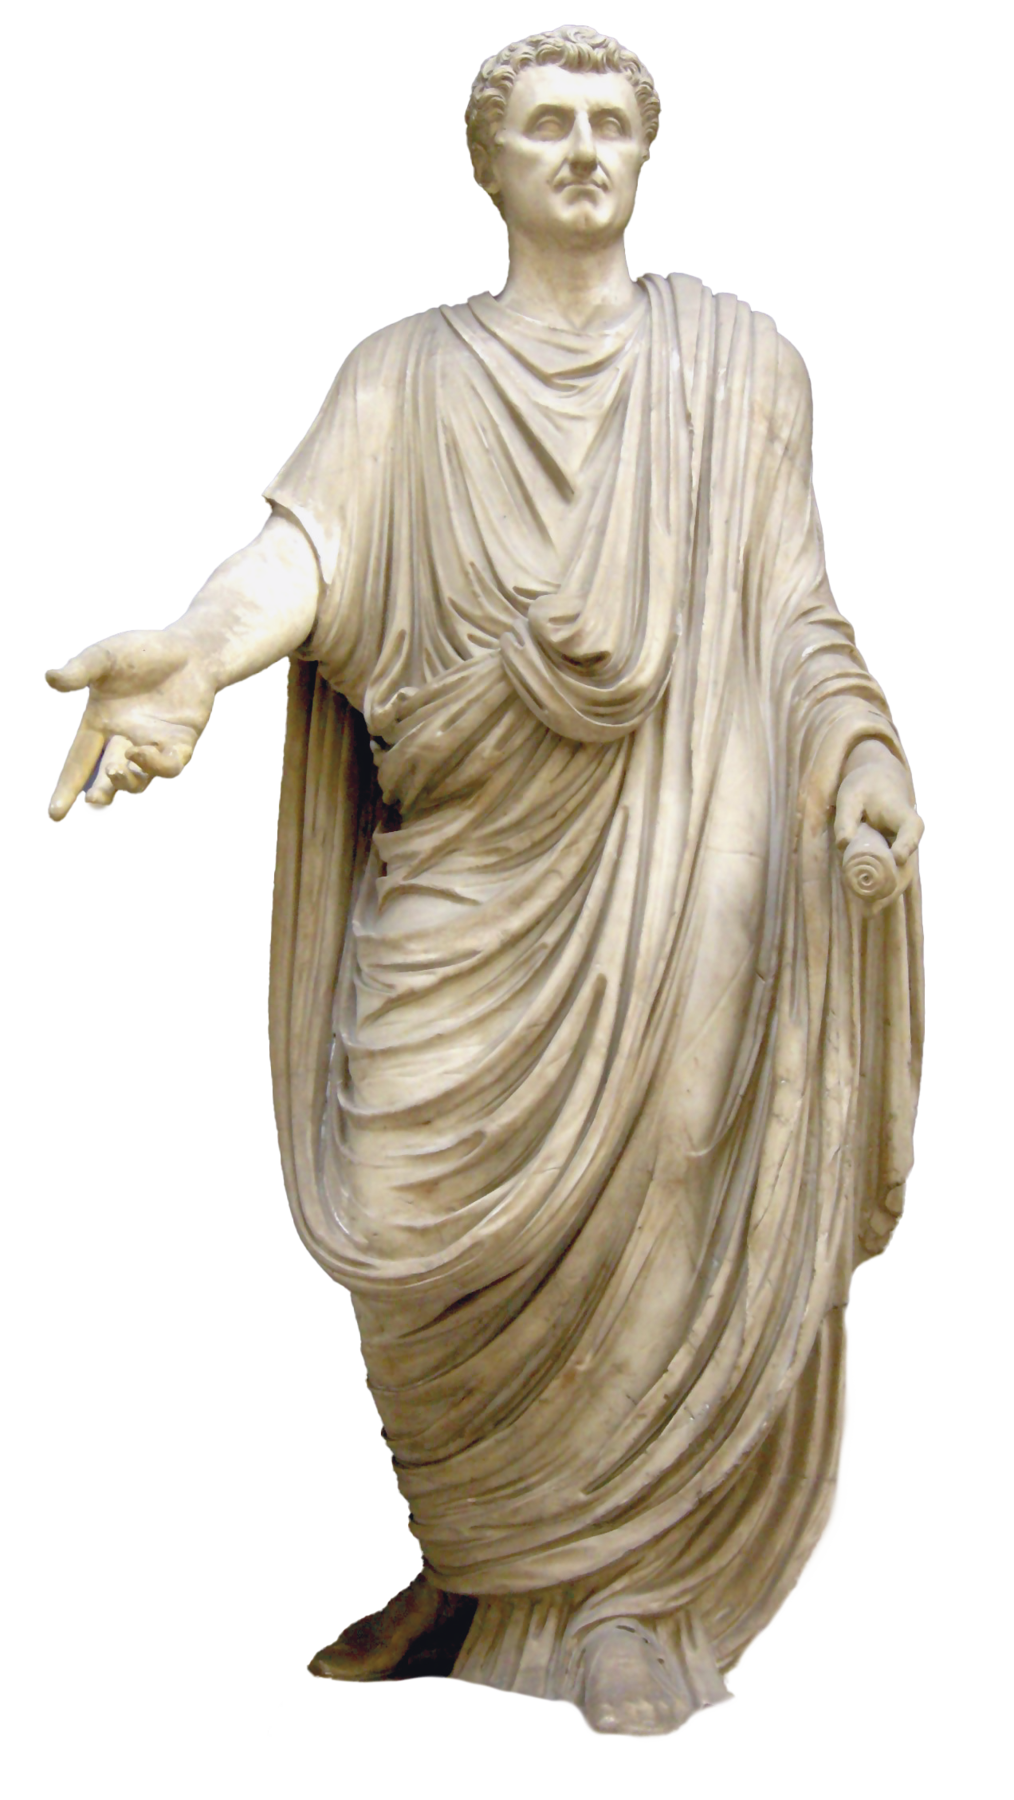 Fotografia. Estátua de um homem de cabelos curtos usando uma túnica longa com panos por cima, com os braços ligeiramente abertos, erguendo a palma de uma mão para frente.